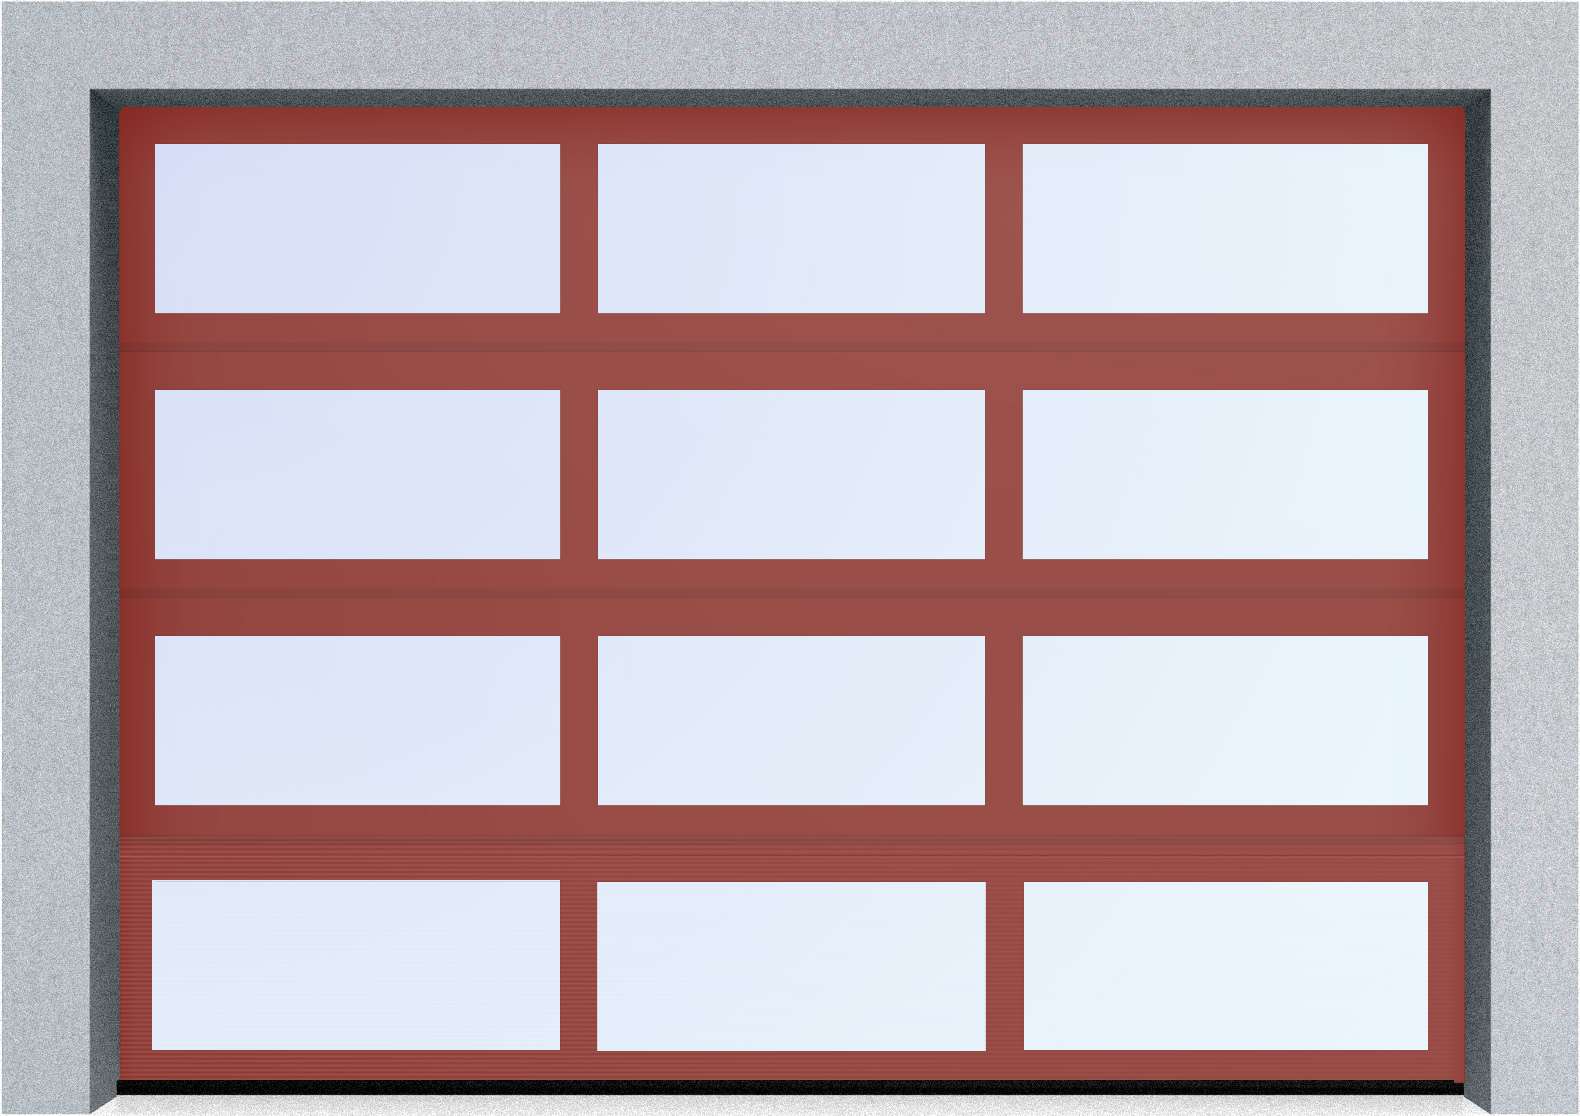  Секционные панорамные ворота серии AluTrend (АЛП) 2625х1875 нижняя панель стандартные цвета, фото 2 